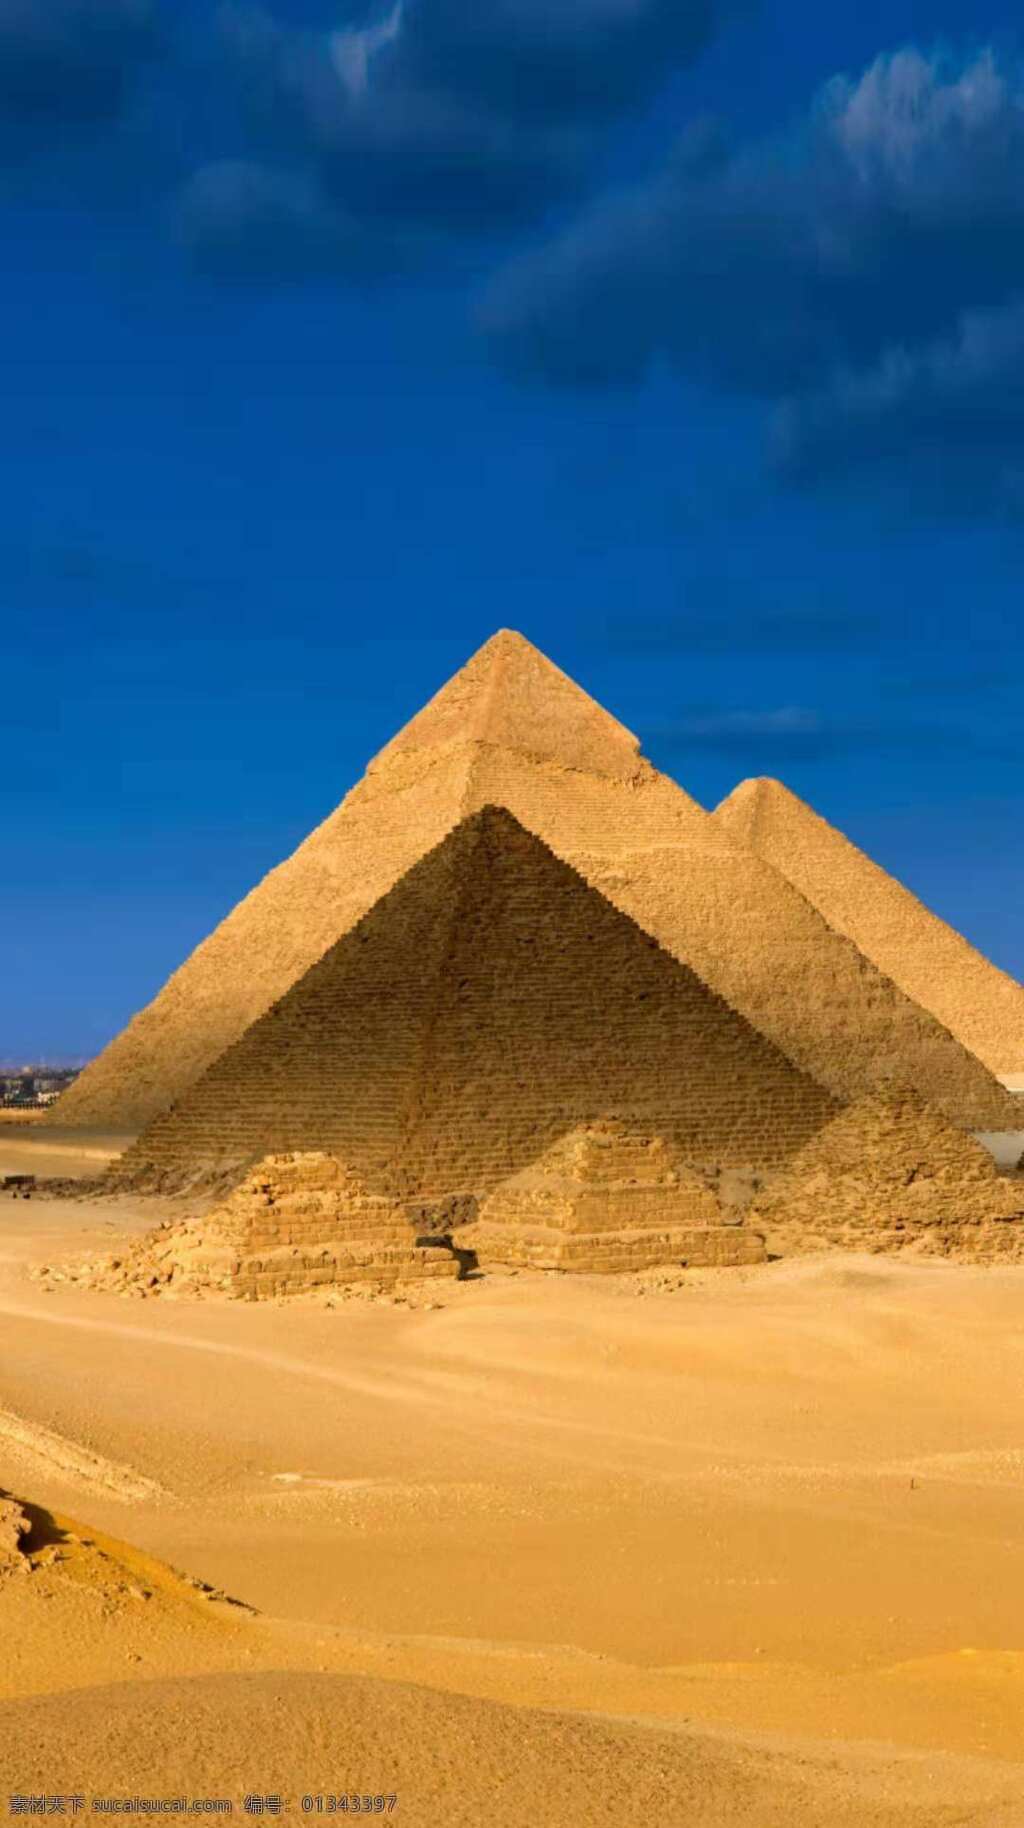 大 沙漠 中 金字塔 神秘的金字塔 外国的金字塔 古老的金字塔 智慧的金字塔 金字塔拍摄 金字塔旅游 旅游摄影 国外旅游